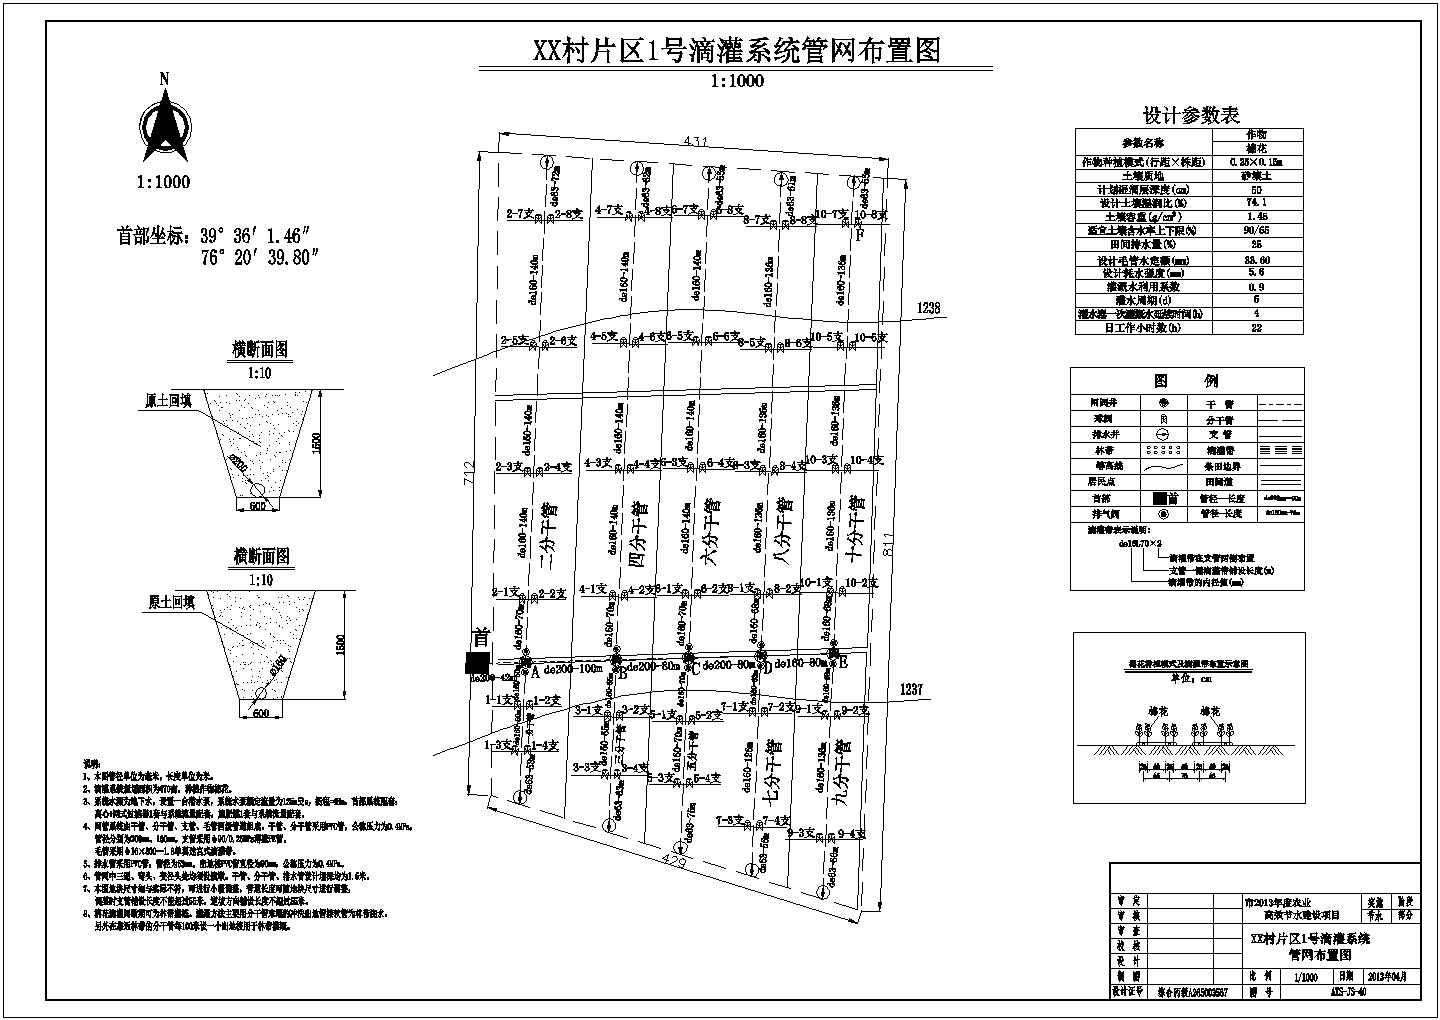 【新疆】1.5万亩滴灌节水灌溉建设项目施工图